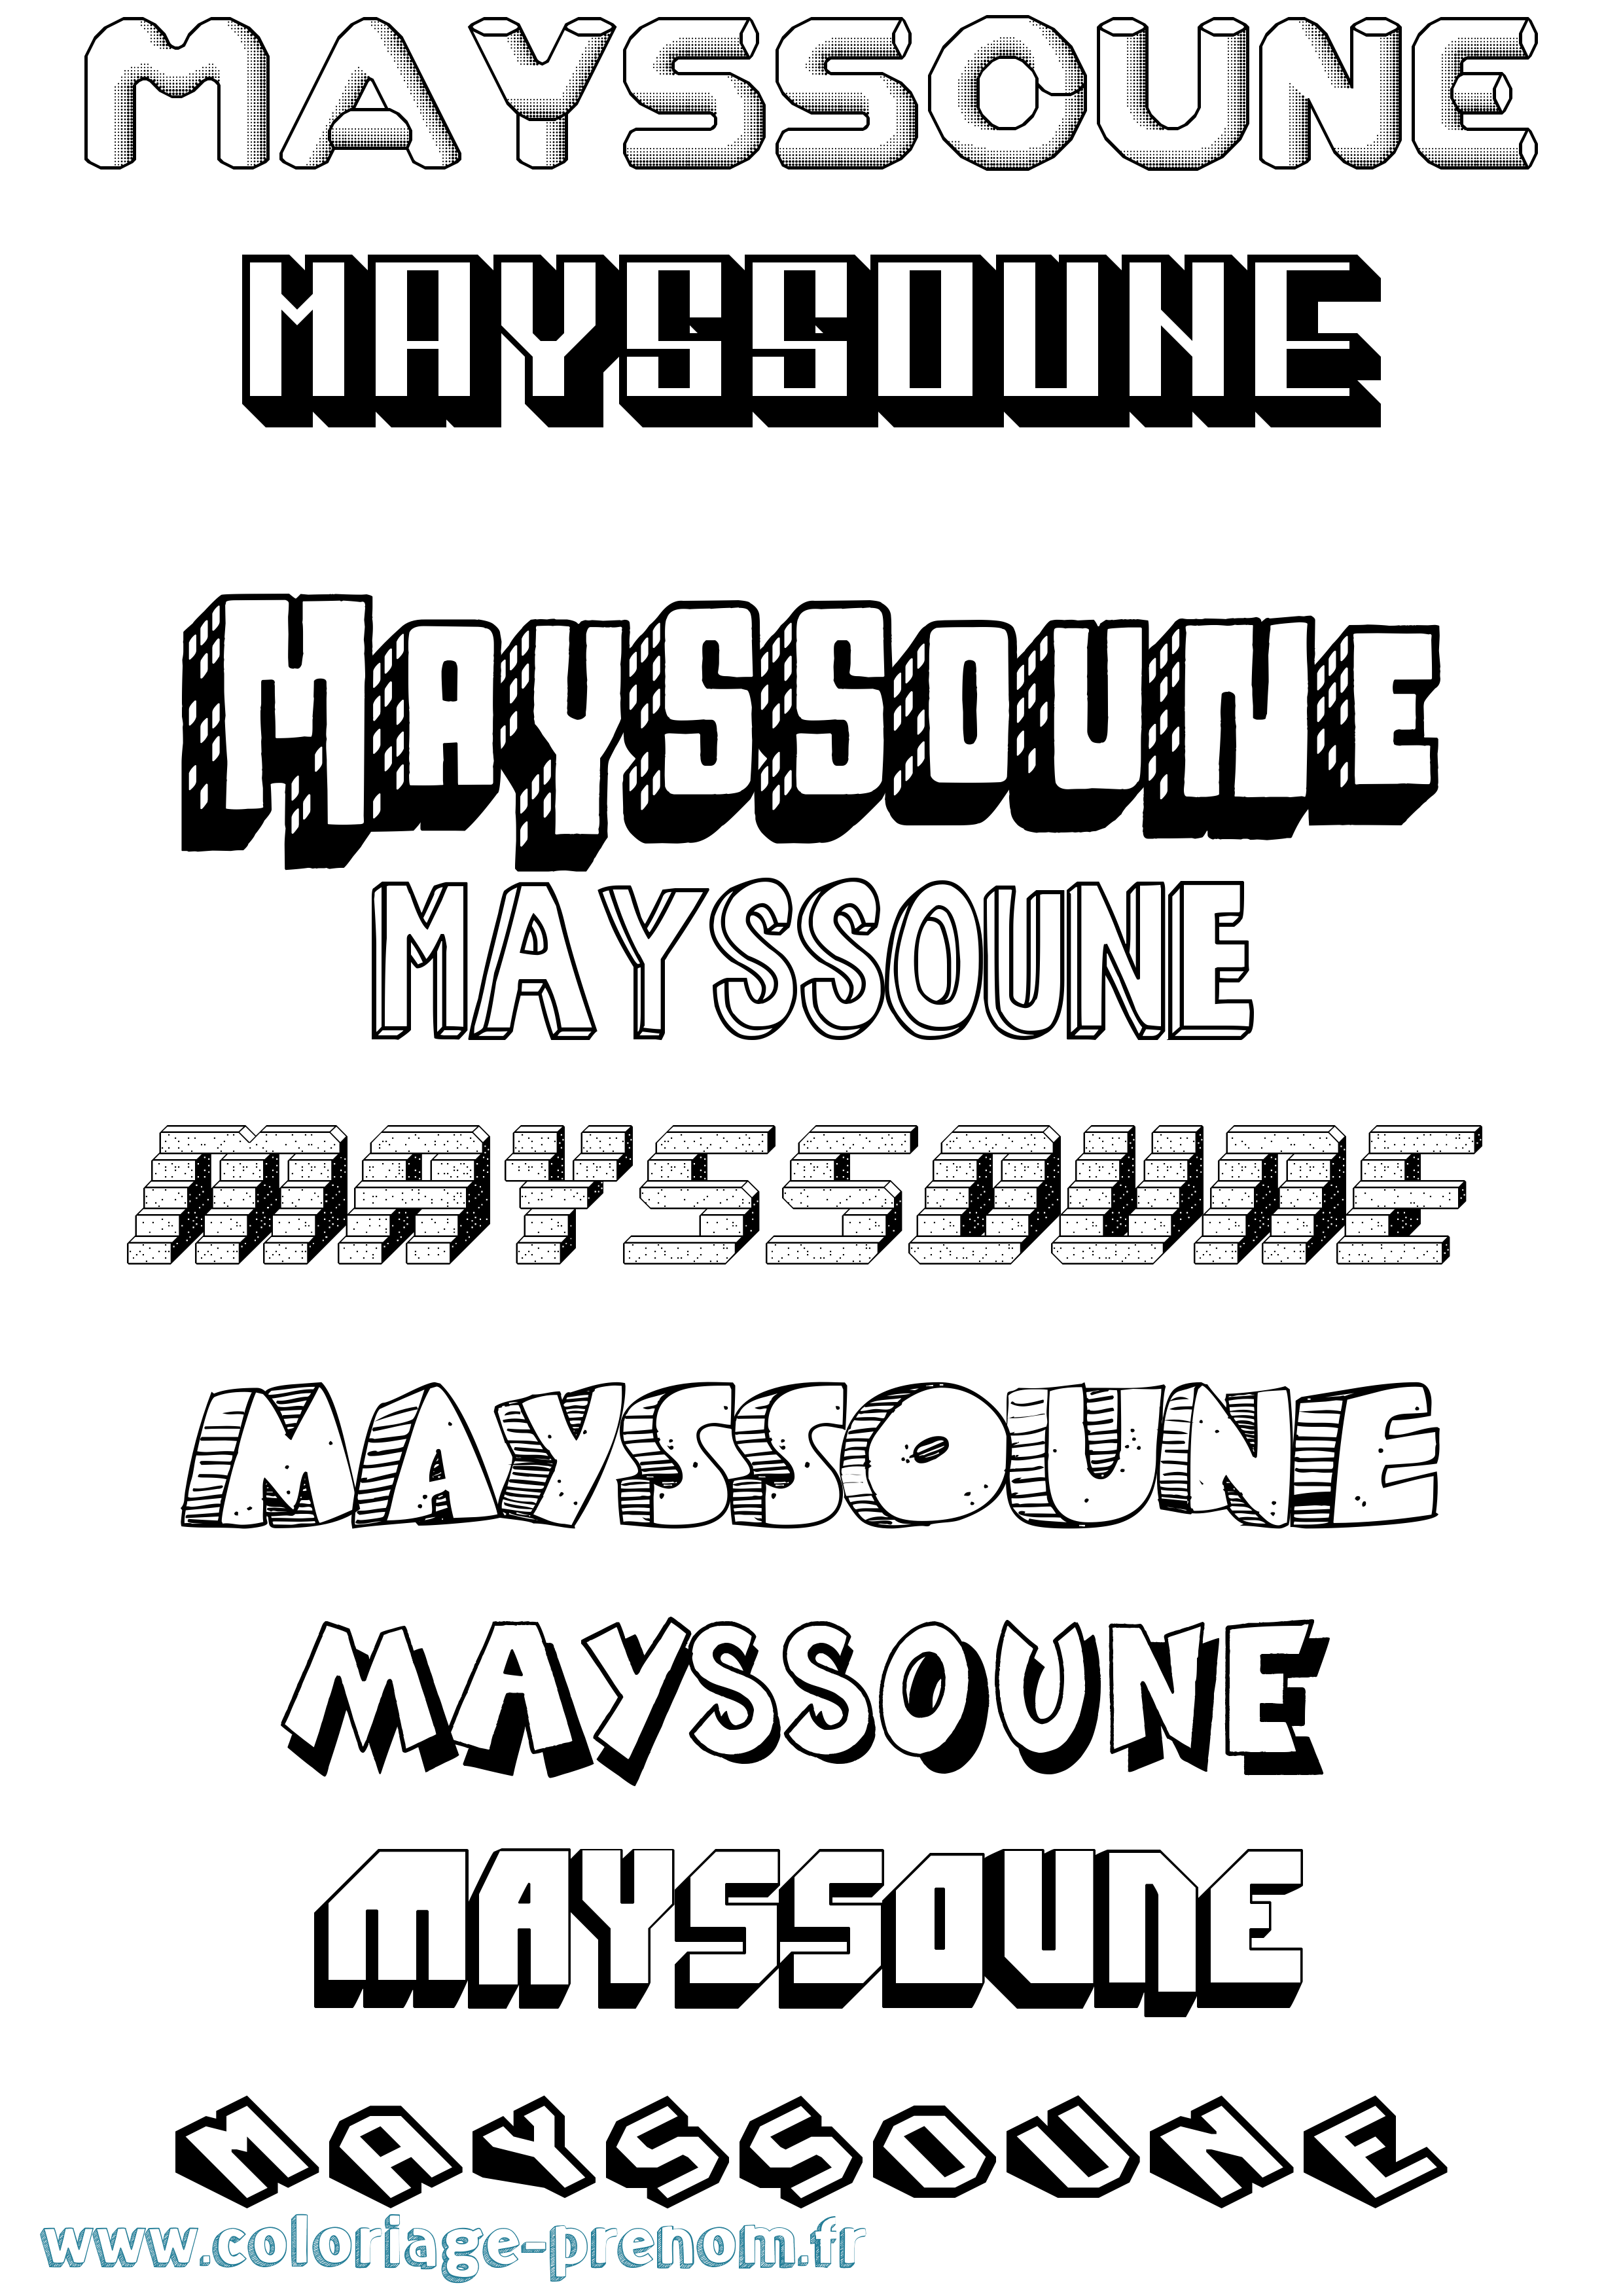 Coloriage prénom Mayssoune Effet 3D